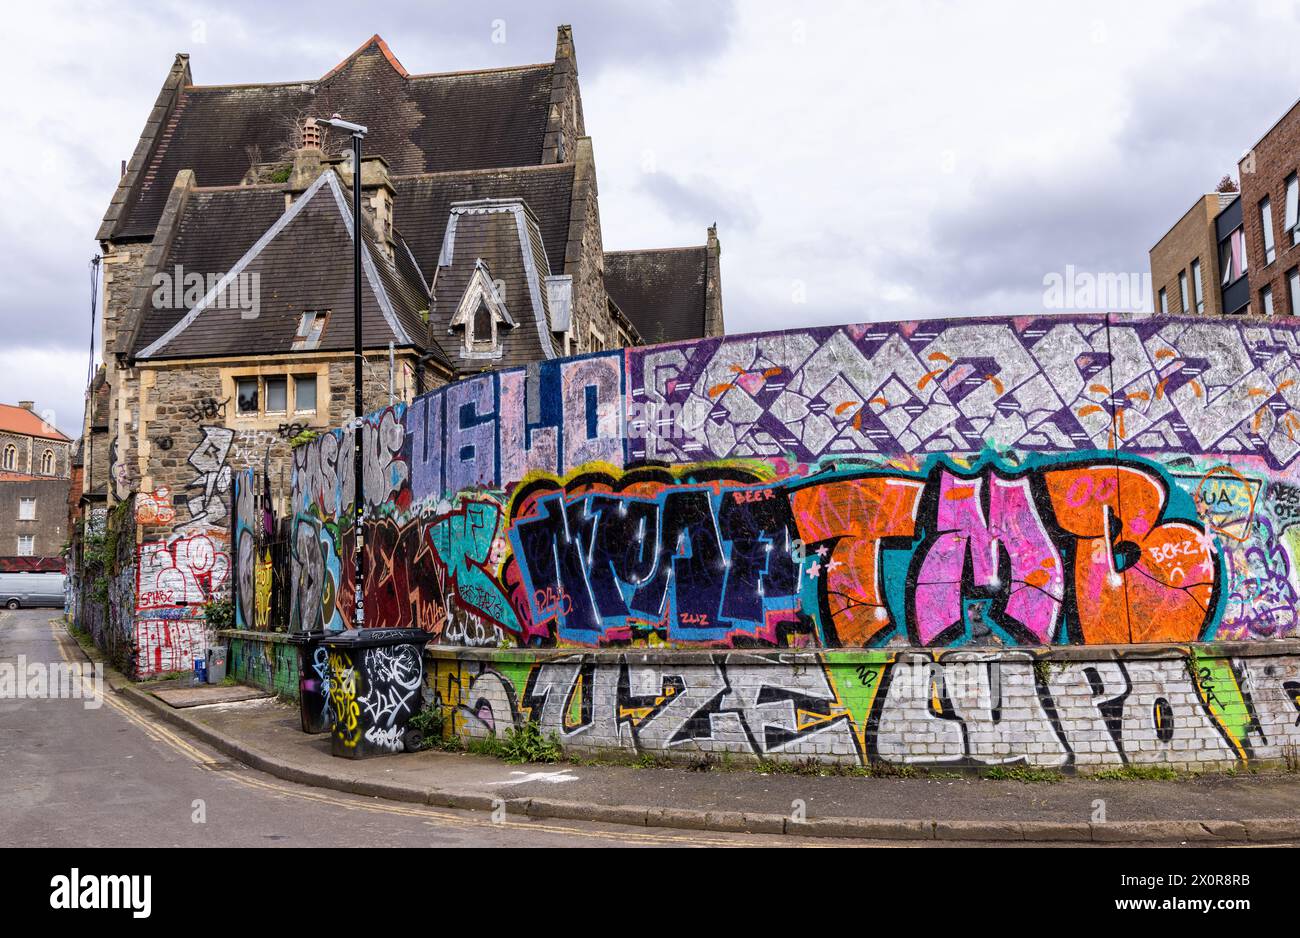 Arte di strada contemporanea - graffiti urbani sulle pareti a Stokes Croft, Bristol, Inghilterra, Regno Unito Foto Stock